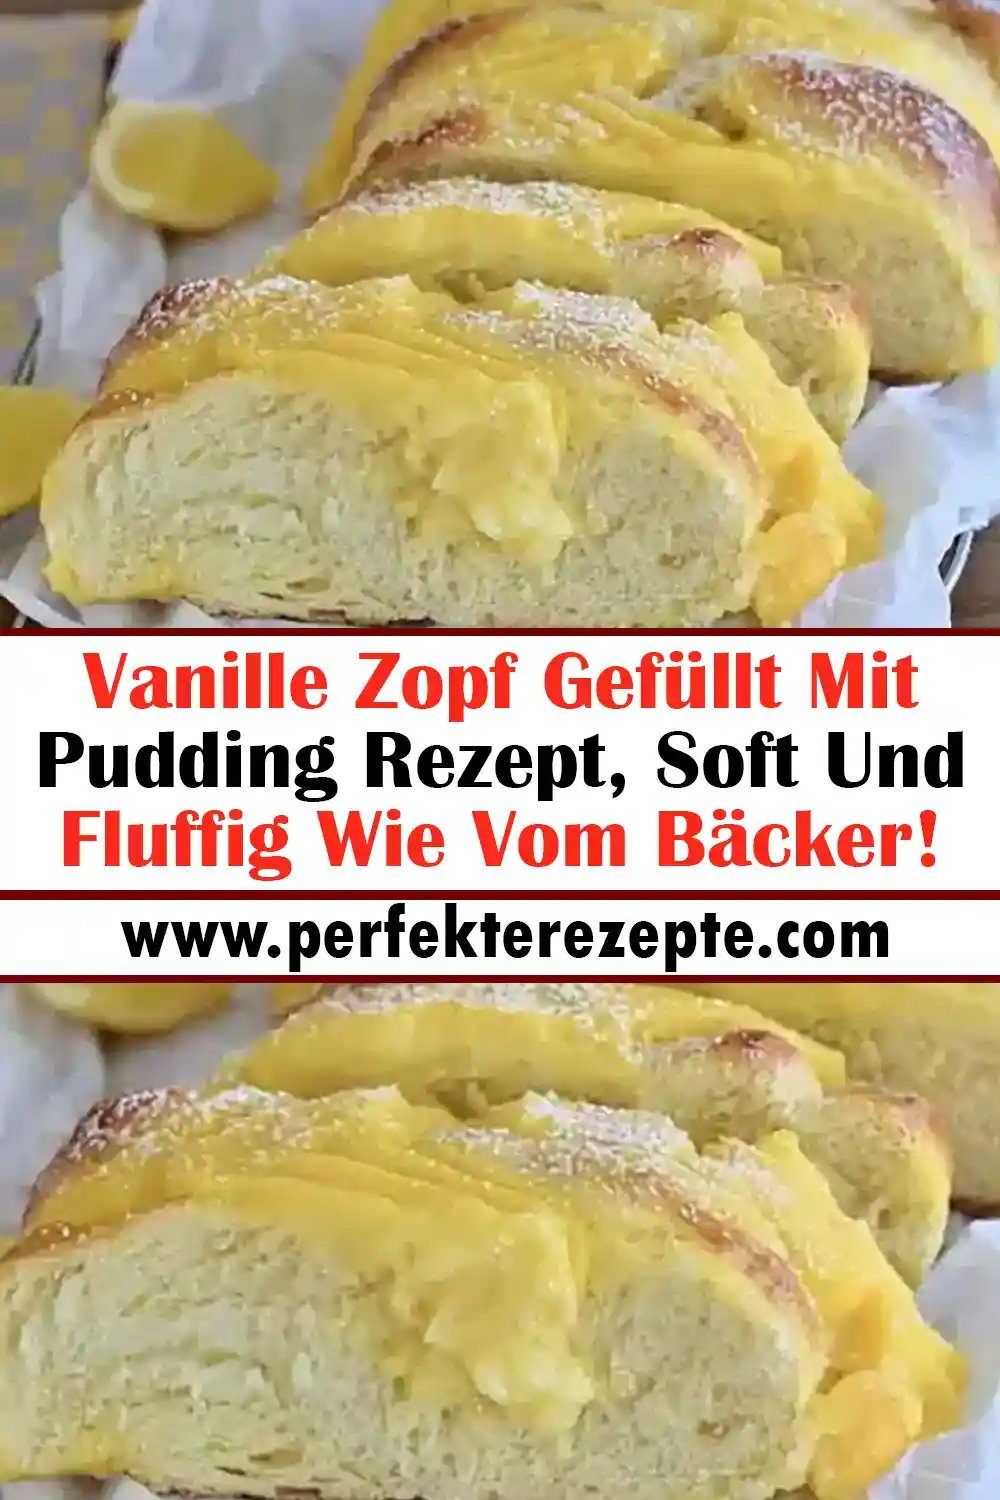 Vanille Zopf Gefüllt Mit Pudding Rezept, Soft Und Fluffig Wie Vom Bäcker!